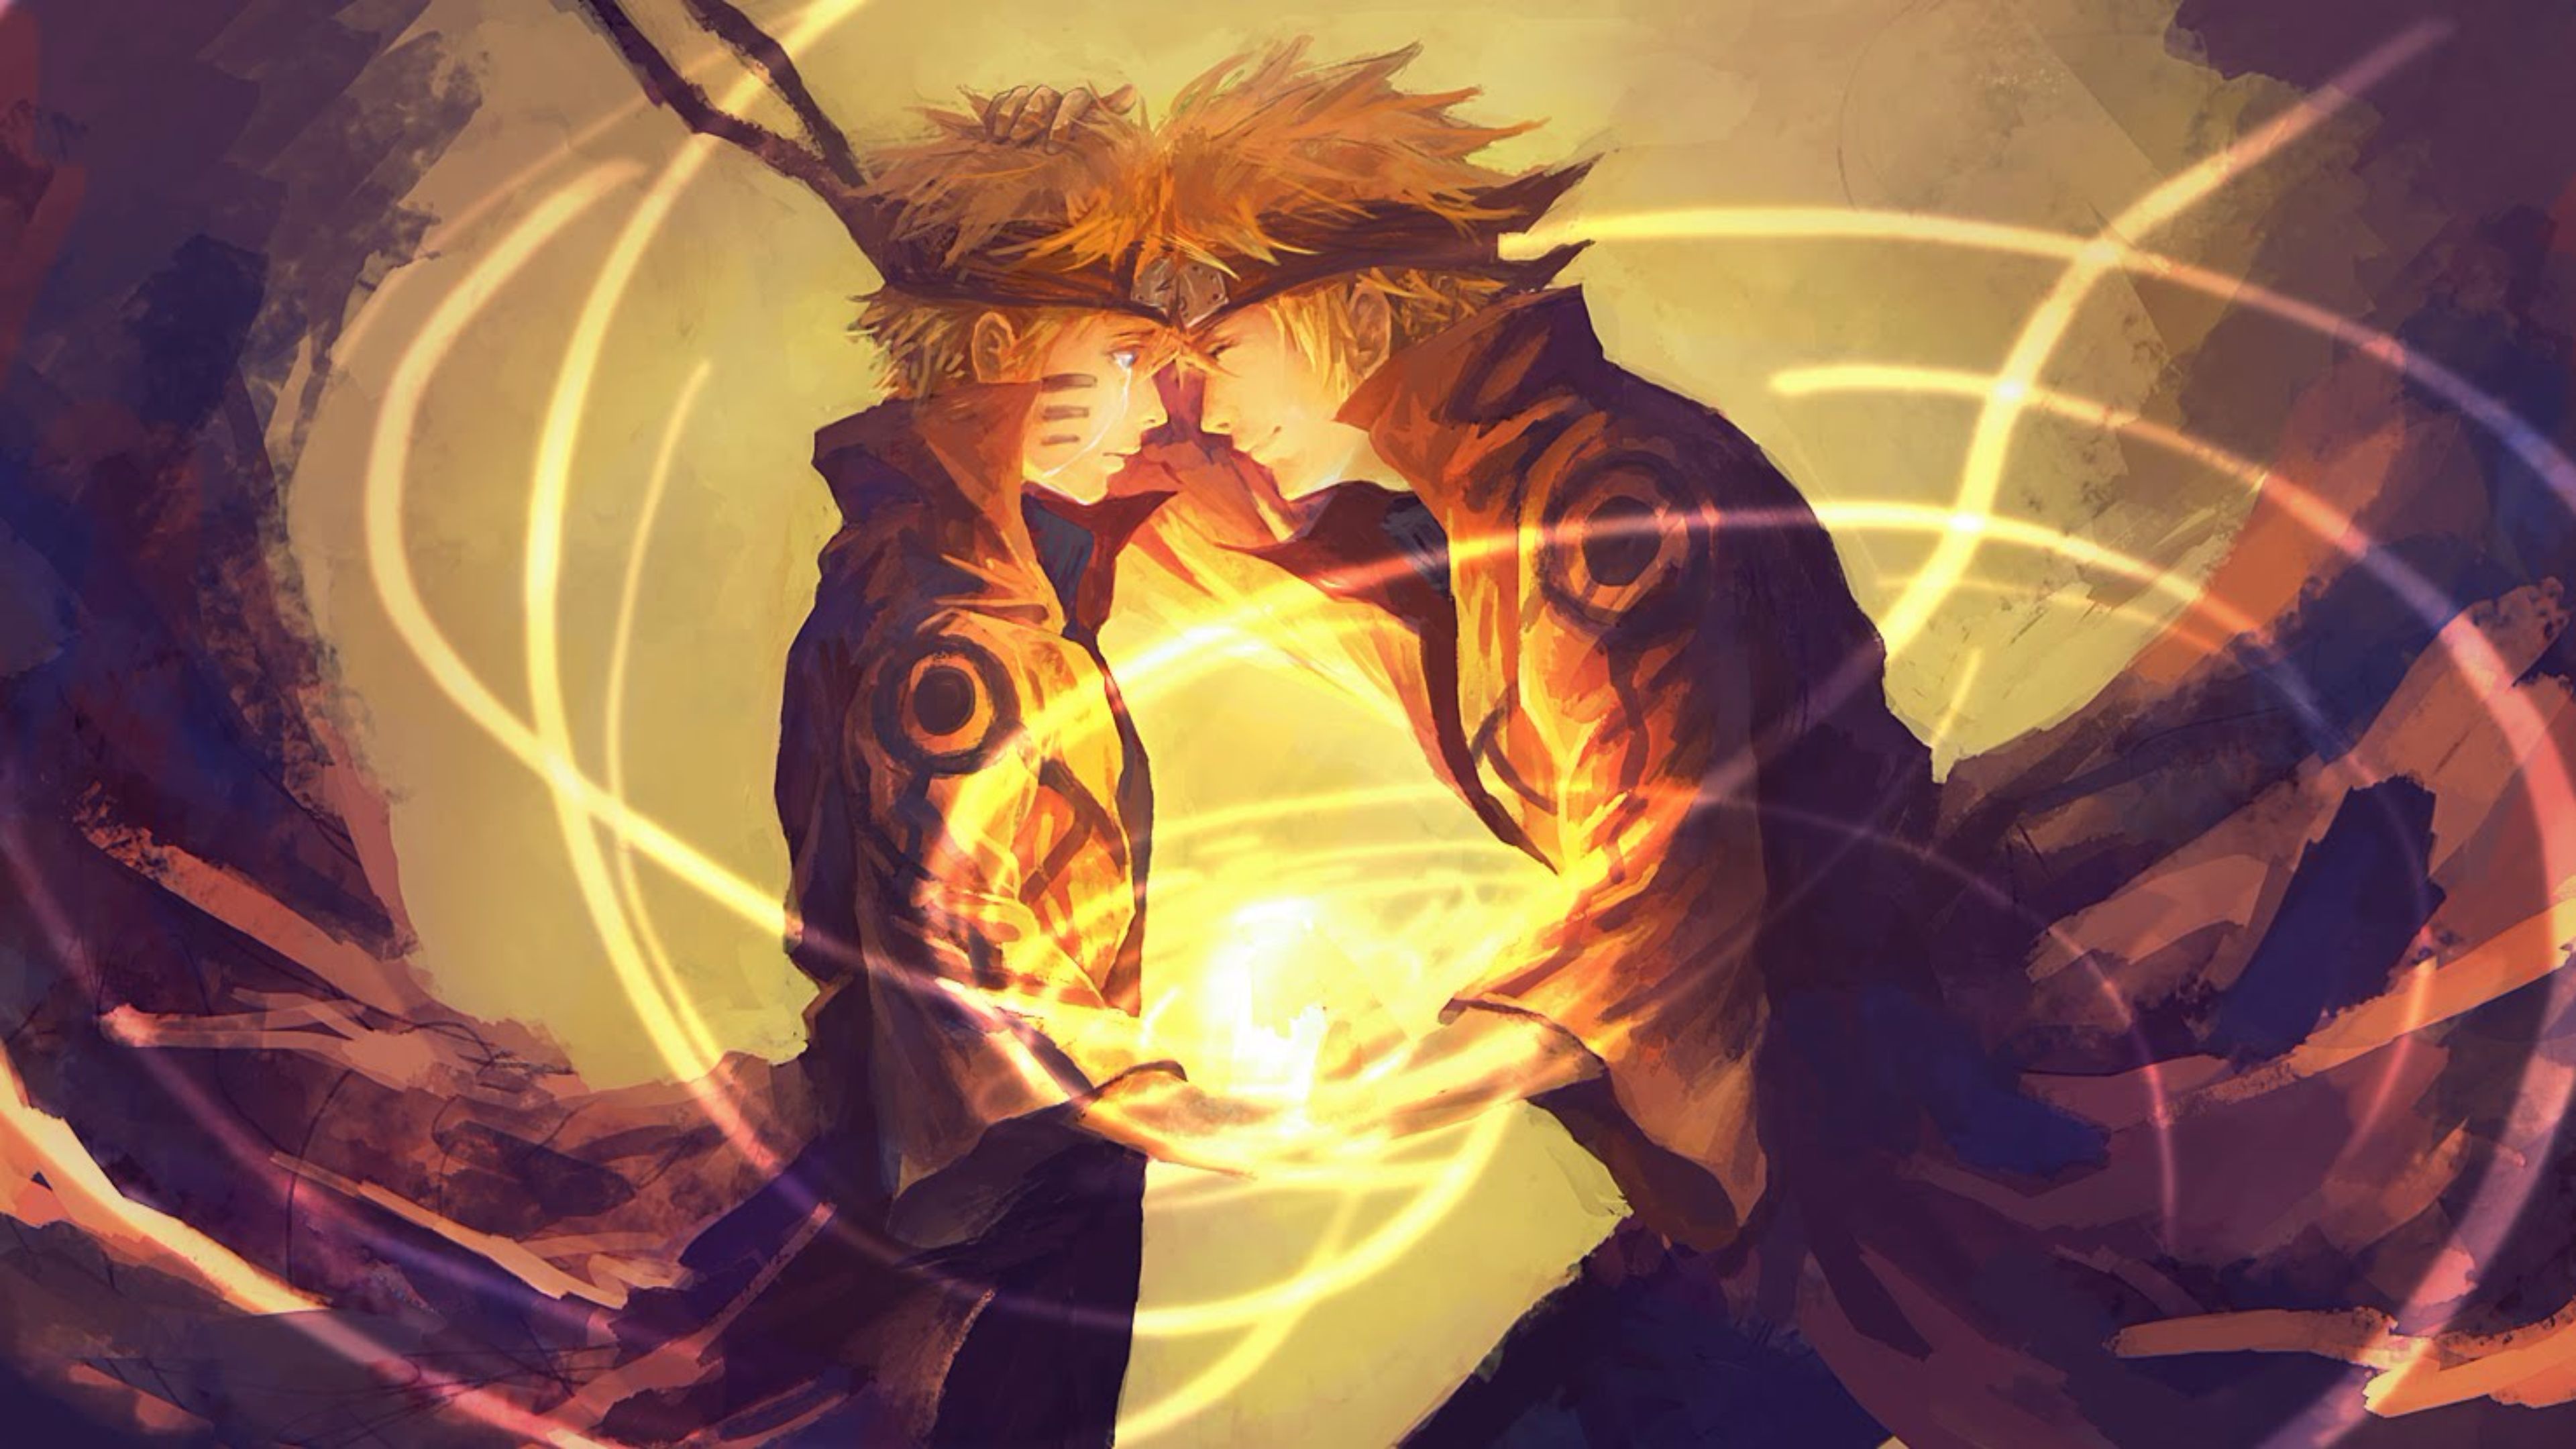 Nếu bạn thích Naruto và muốn tìm kiếm bức tranh với độ phân giải cao, thì đây là điều bạn cần! Bức tranh Naruto 4k này không chỉ có độ phân giải cao mà còn có thiết kế độc đáo, mang phong cách riêng của Naruto. Hãy xem ngay để thấy vẻ đẹp tuyệt vời của Naruto trong bức tranh này! 